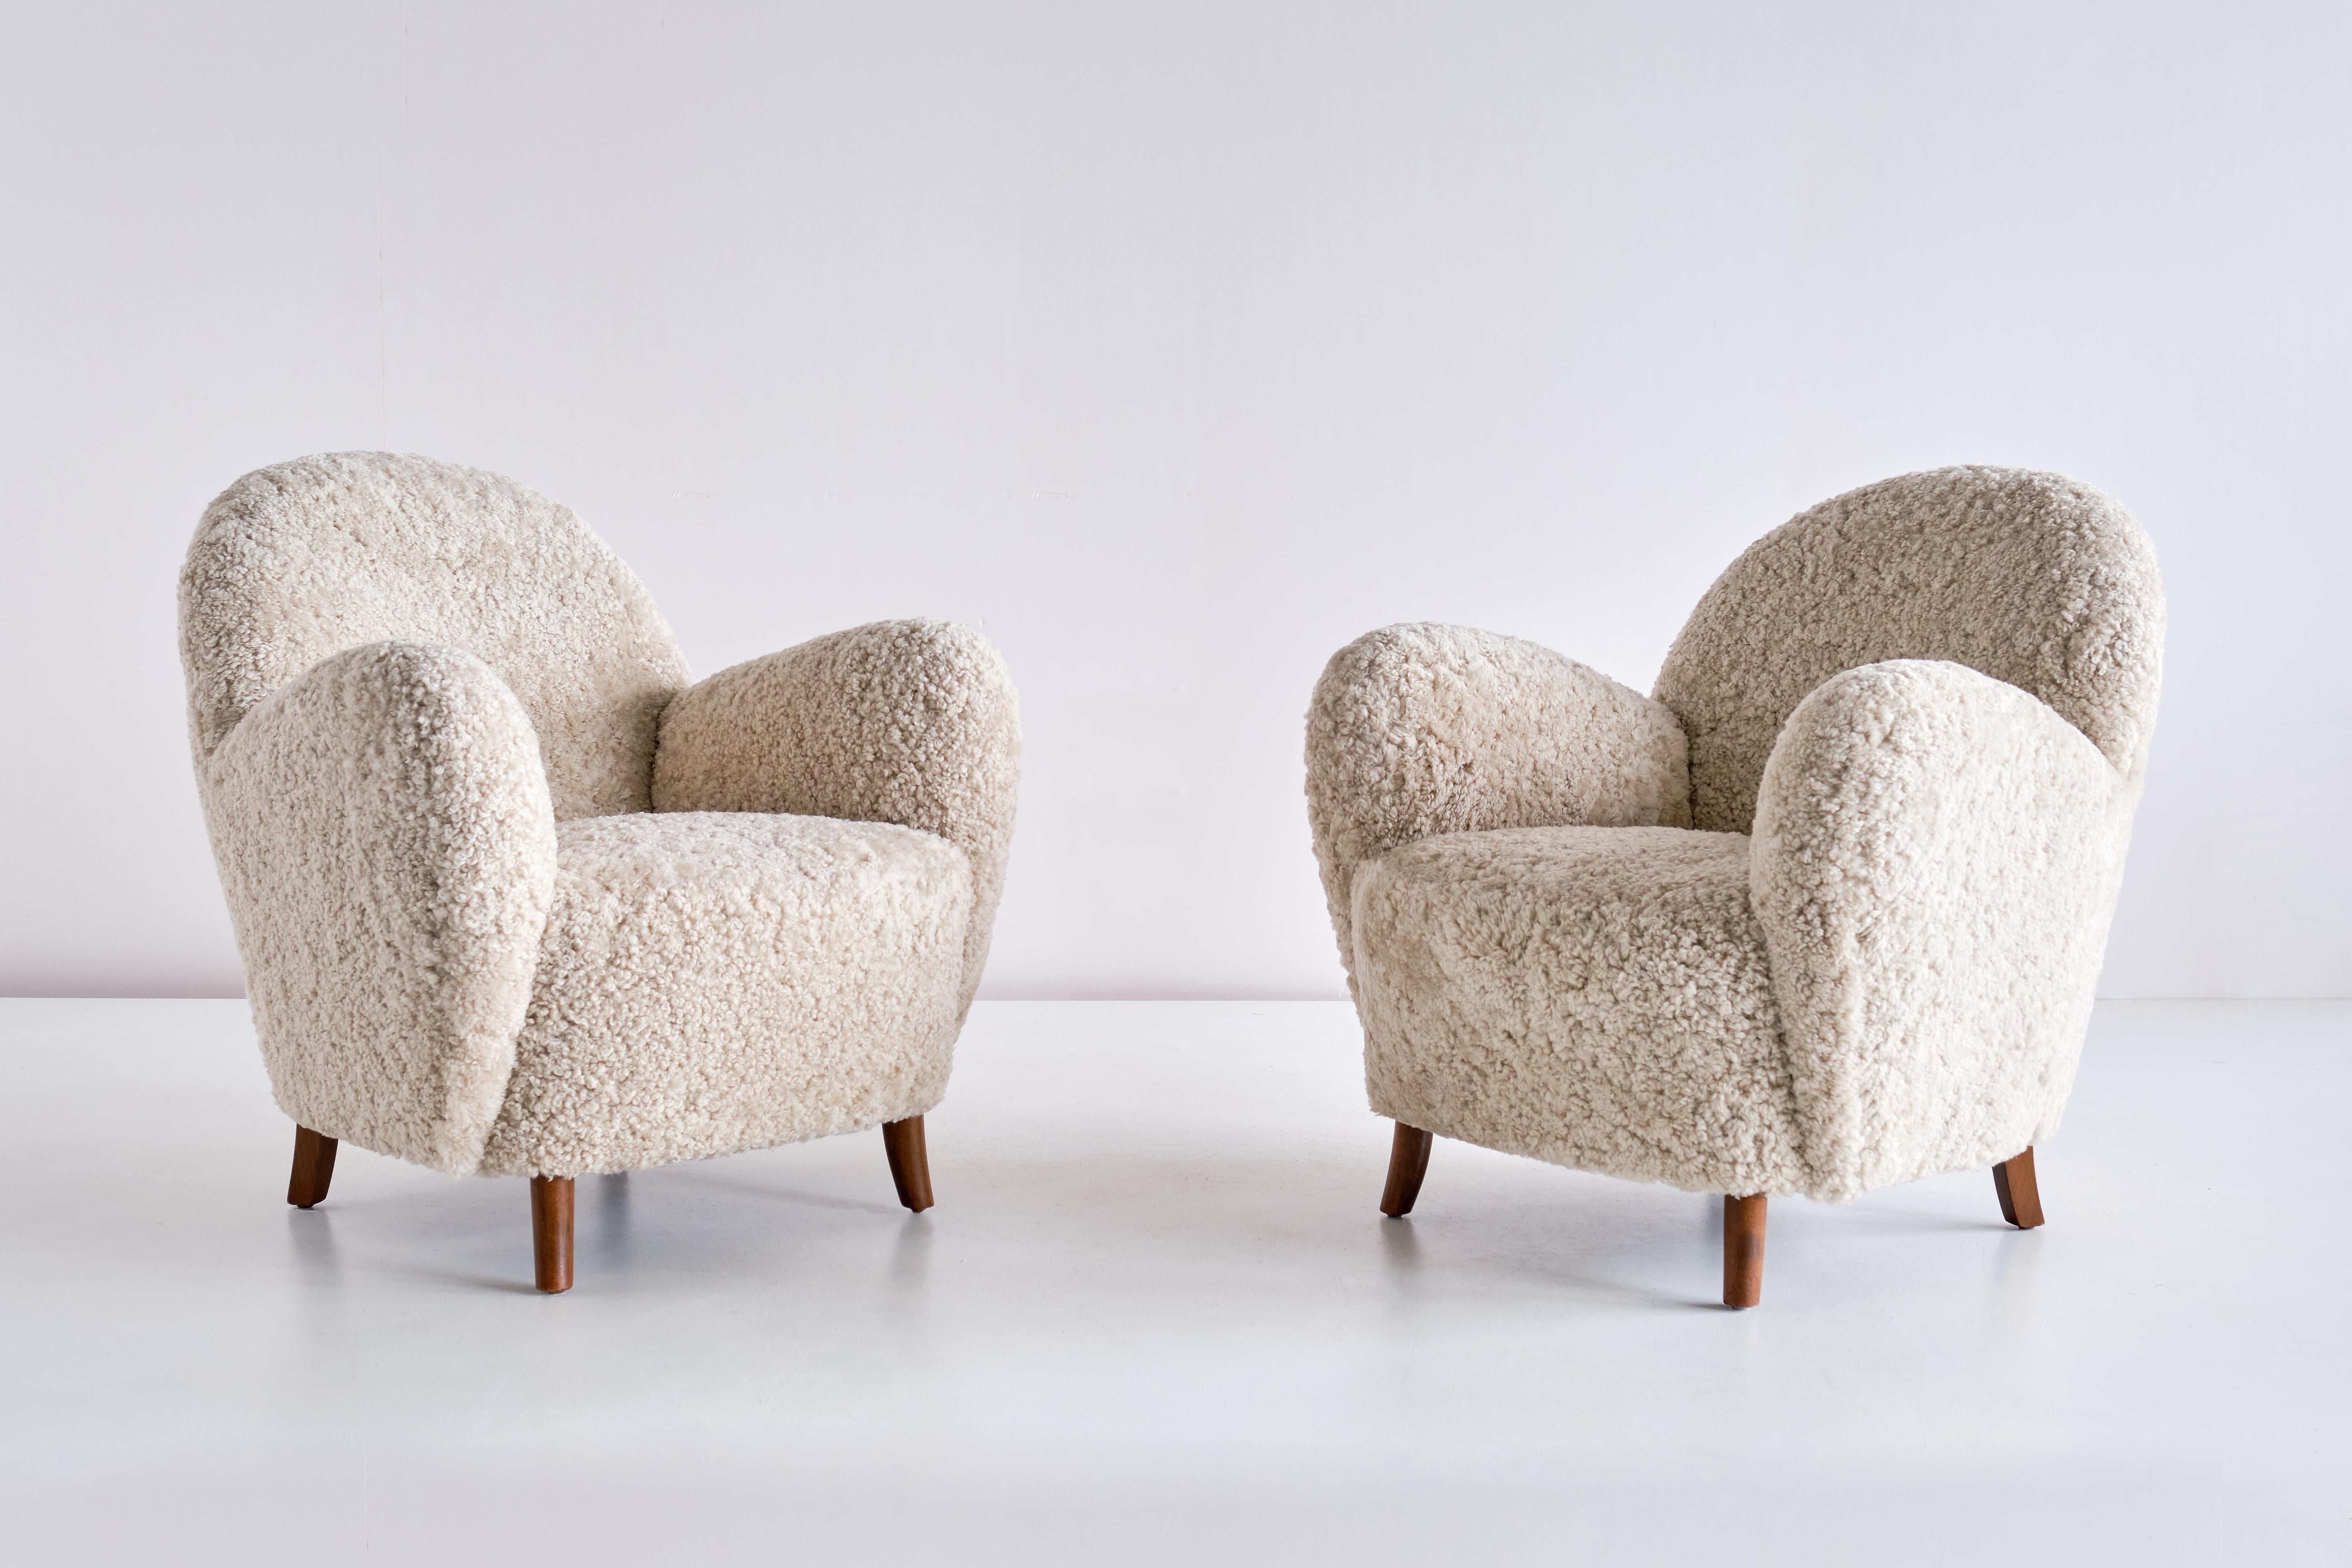 Dieses sehr seltene Sesselpaar wurde Mitte der 1930er Jahre von dem Tischler Thorald Madsen in Dänemark hergestellt. Die geschwungene, runde Form der Armlehnen und der Rückenlehne verleiht dem Design einen unverwechselbaren und modernen